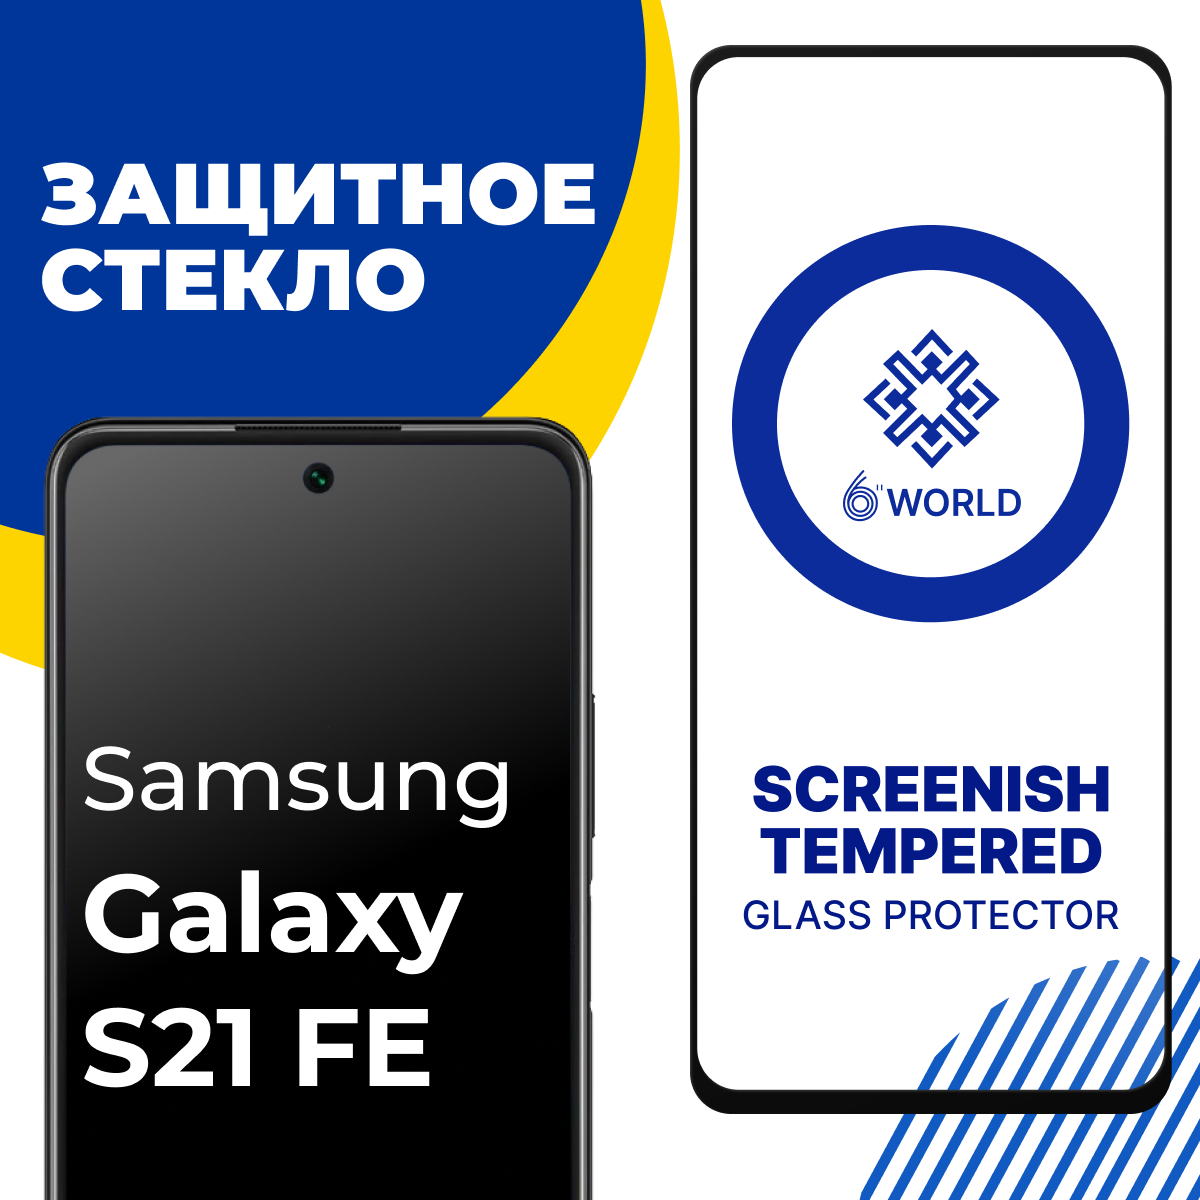 Противоударное защитное стекло для смартфона Samsung Galaxy S21 FE / Полноэкранное глянцевое стекло на Самсунг Галакси С21 ФЕ / SCREENISH GLASS